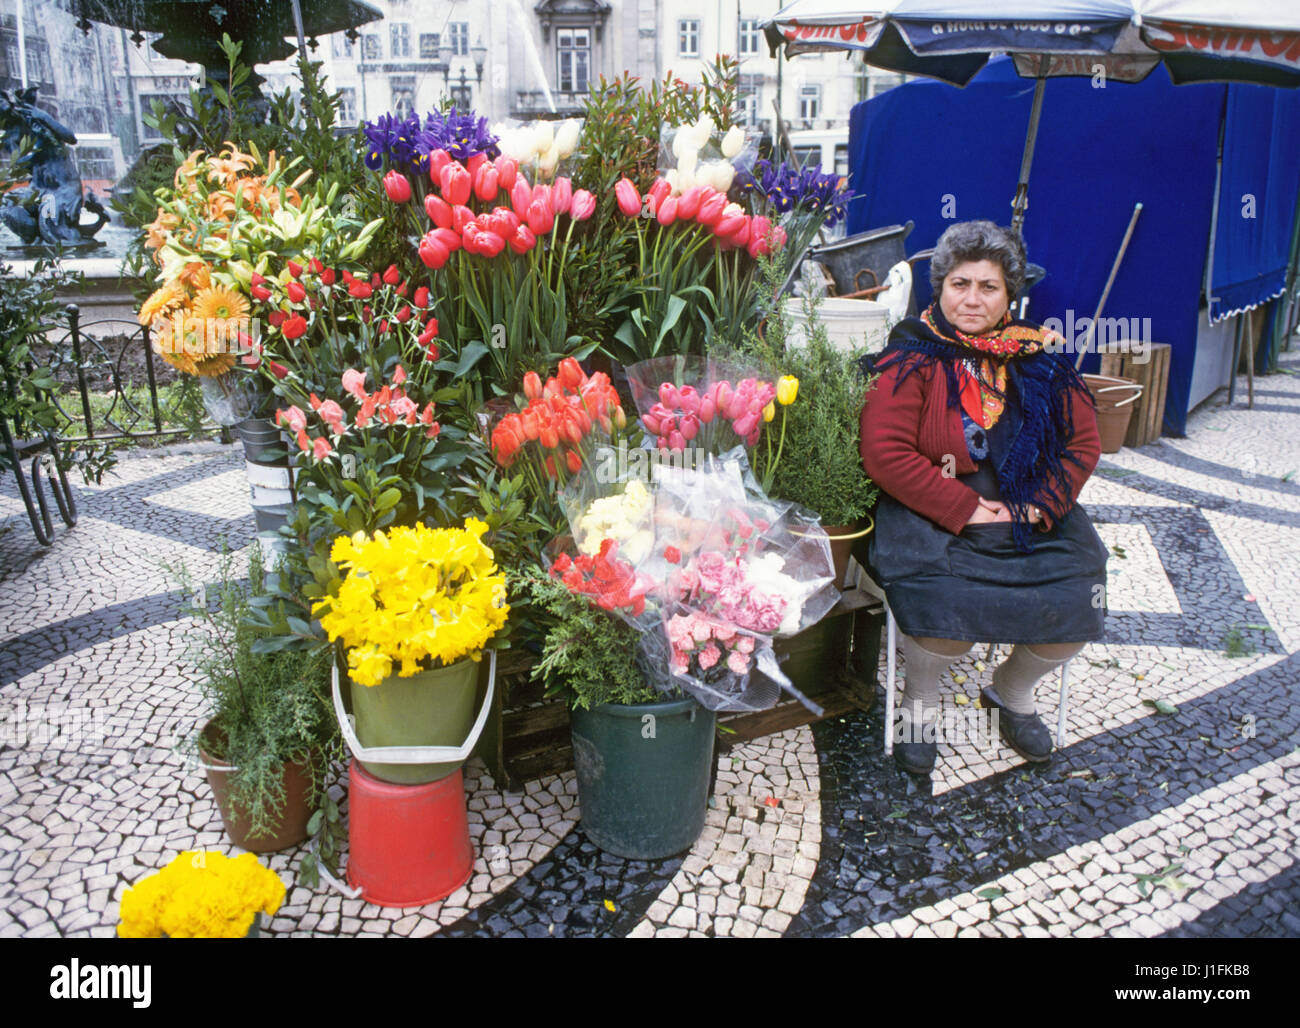 Il fiore lady, vendono fiori nella principale piazza del centro di Lisbona, Portgugal Foto Stock